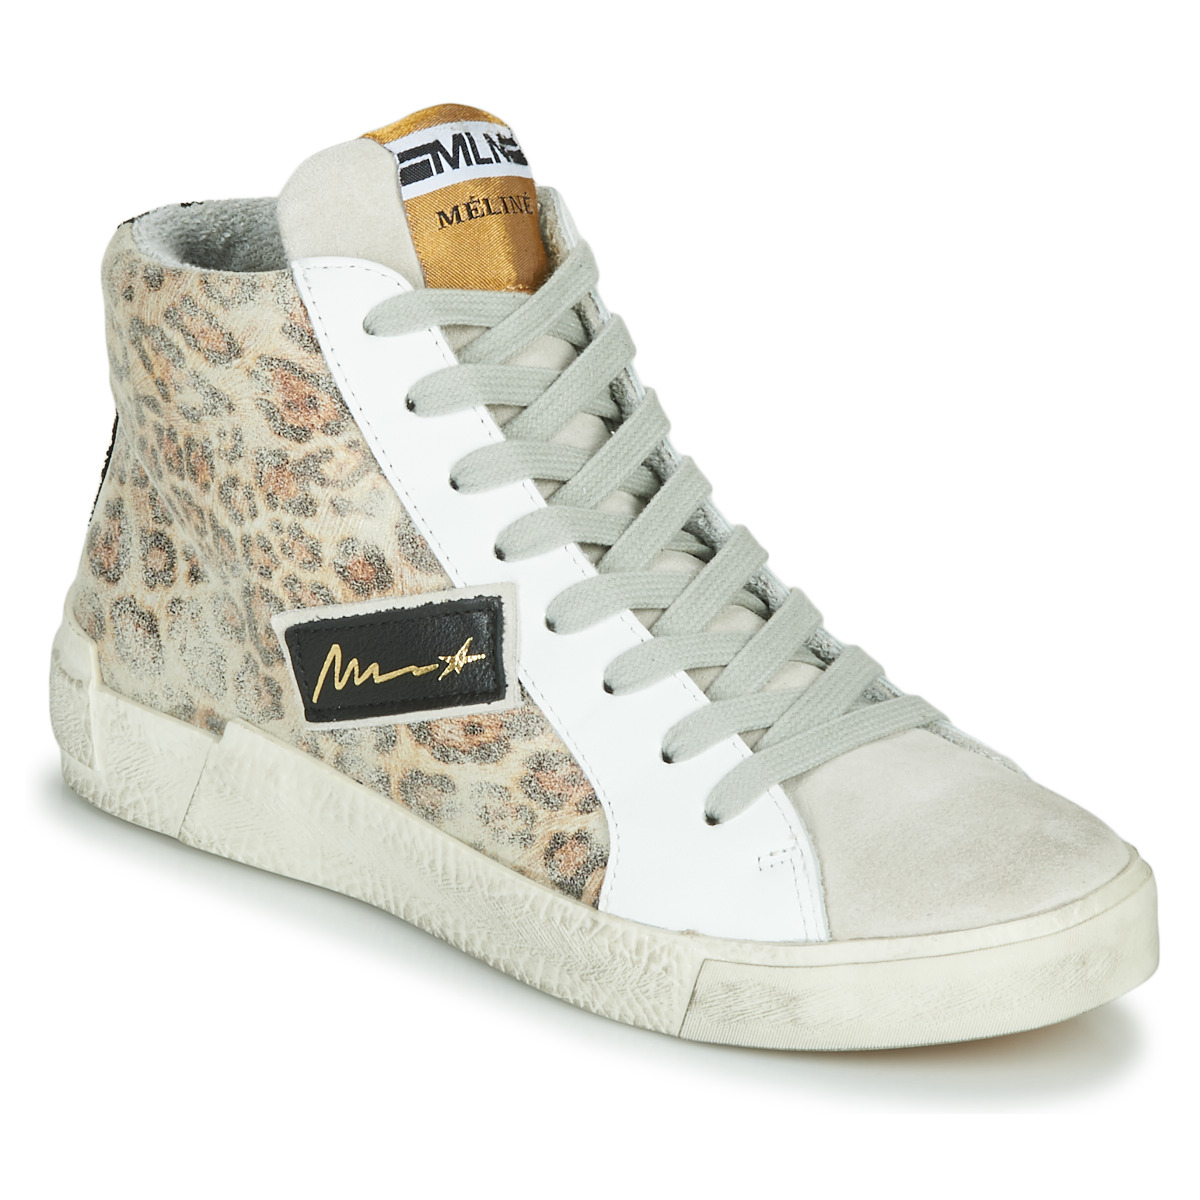 Sapatos Mulher Sapatilhas de cano-alto Meline NK5050 Bege / Leopardo